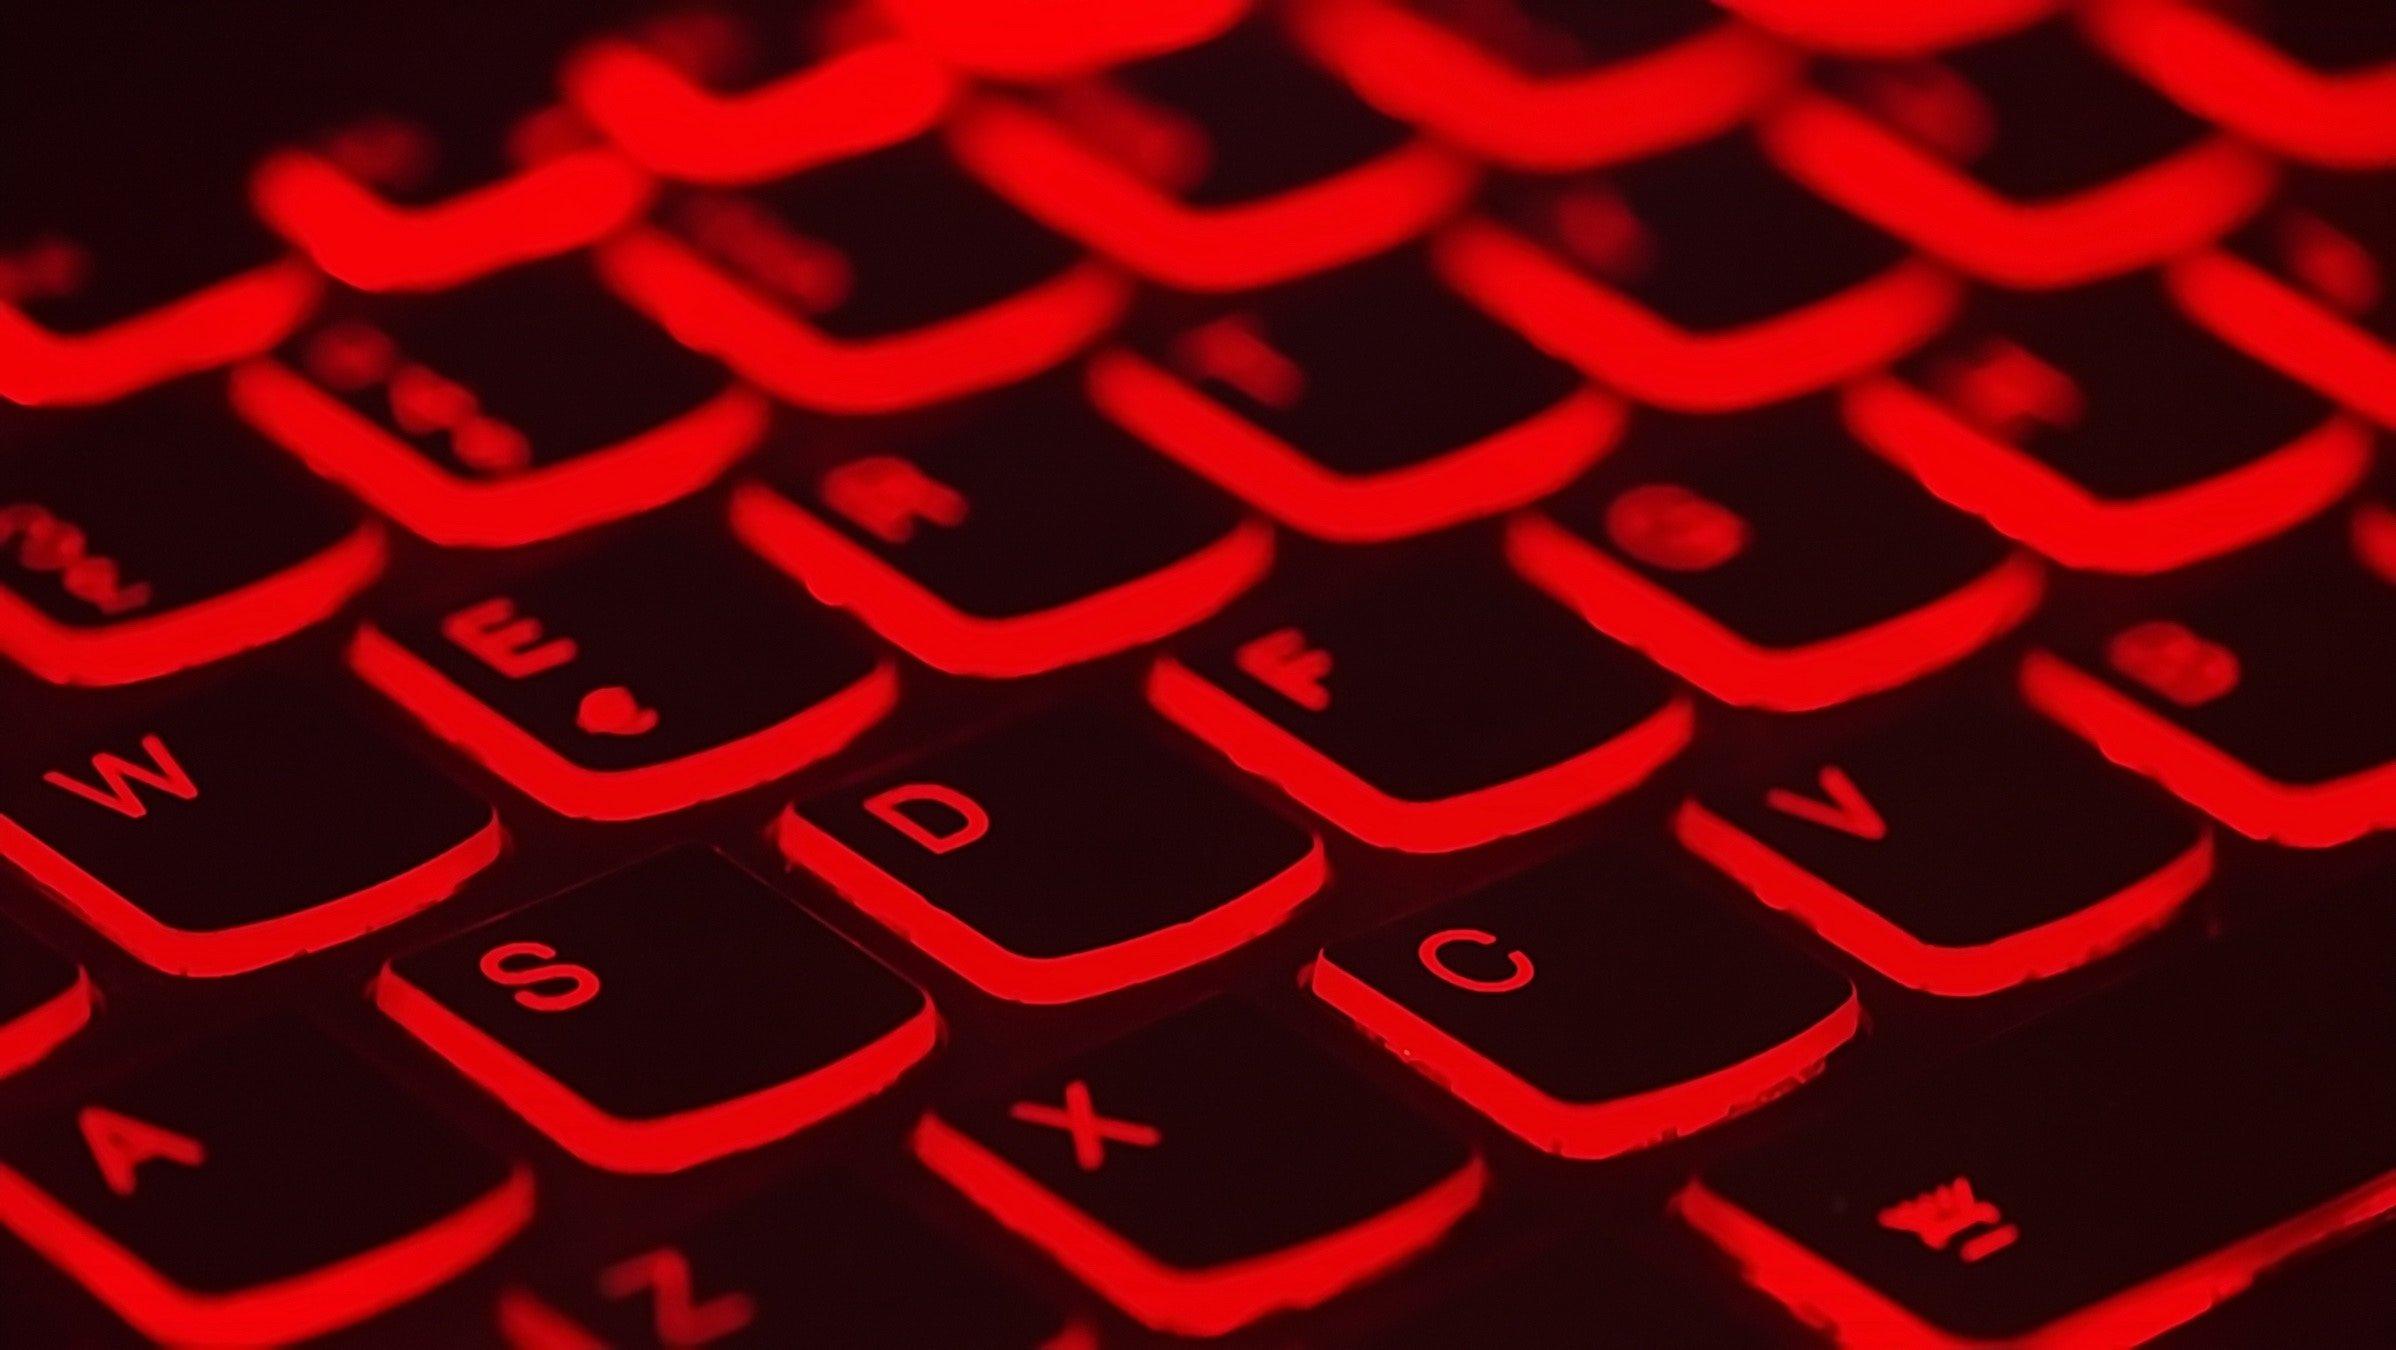 Fragment klawiatury, klawisze podświetlone na czerwono